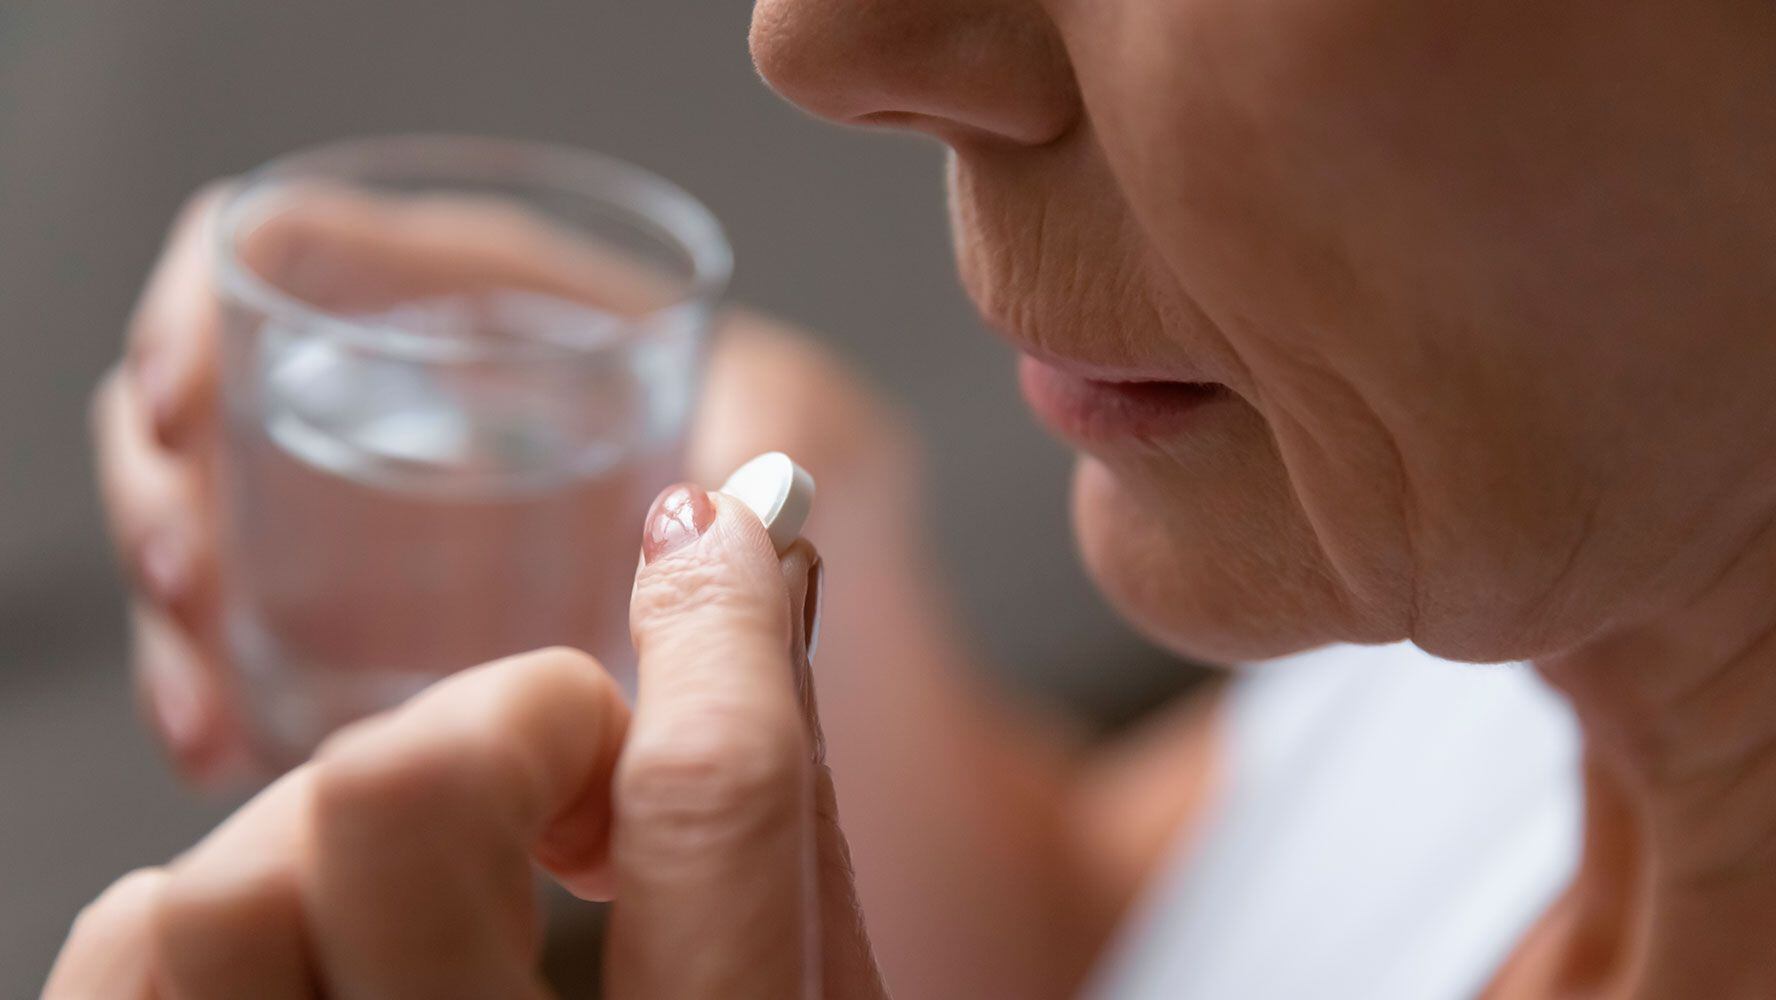 ¿Aspirina para prevenir infartos? No es buena idea, advierten expertos